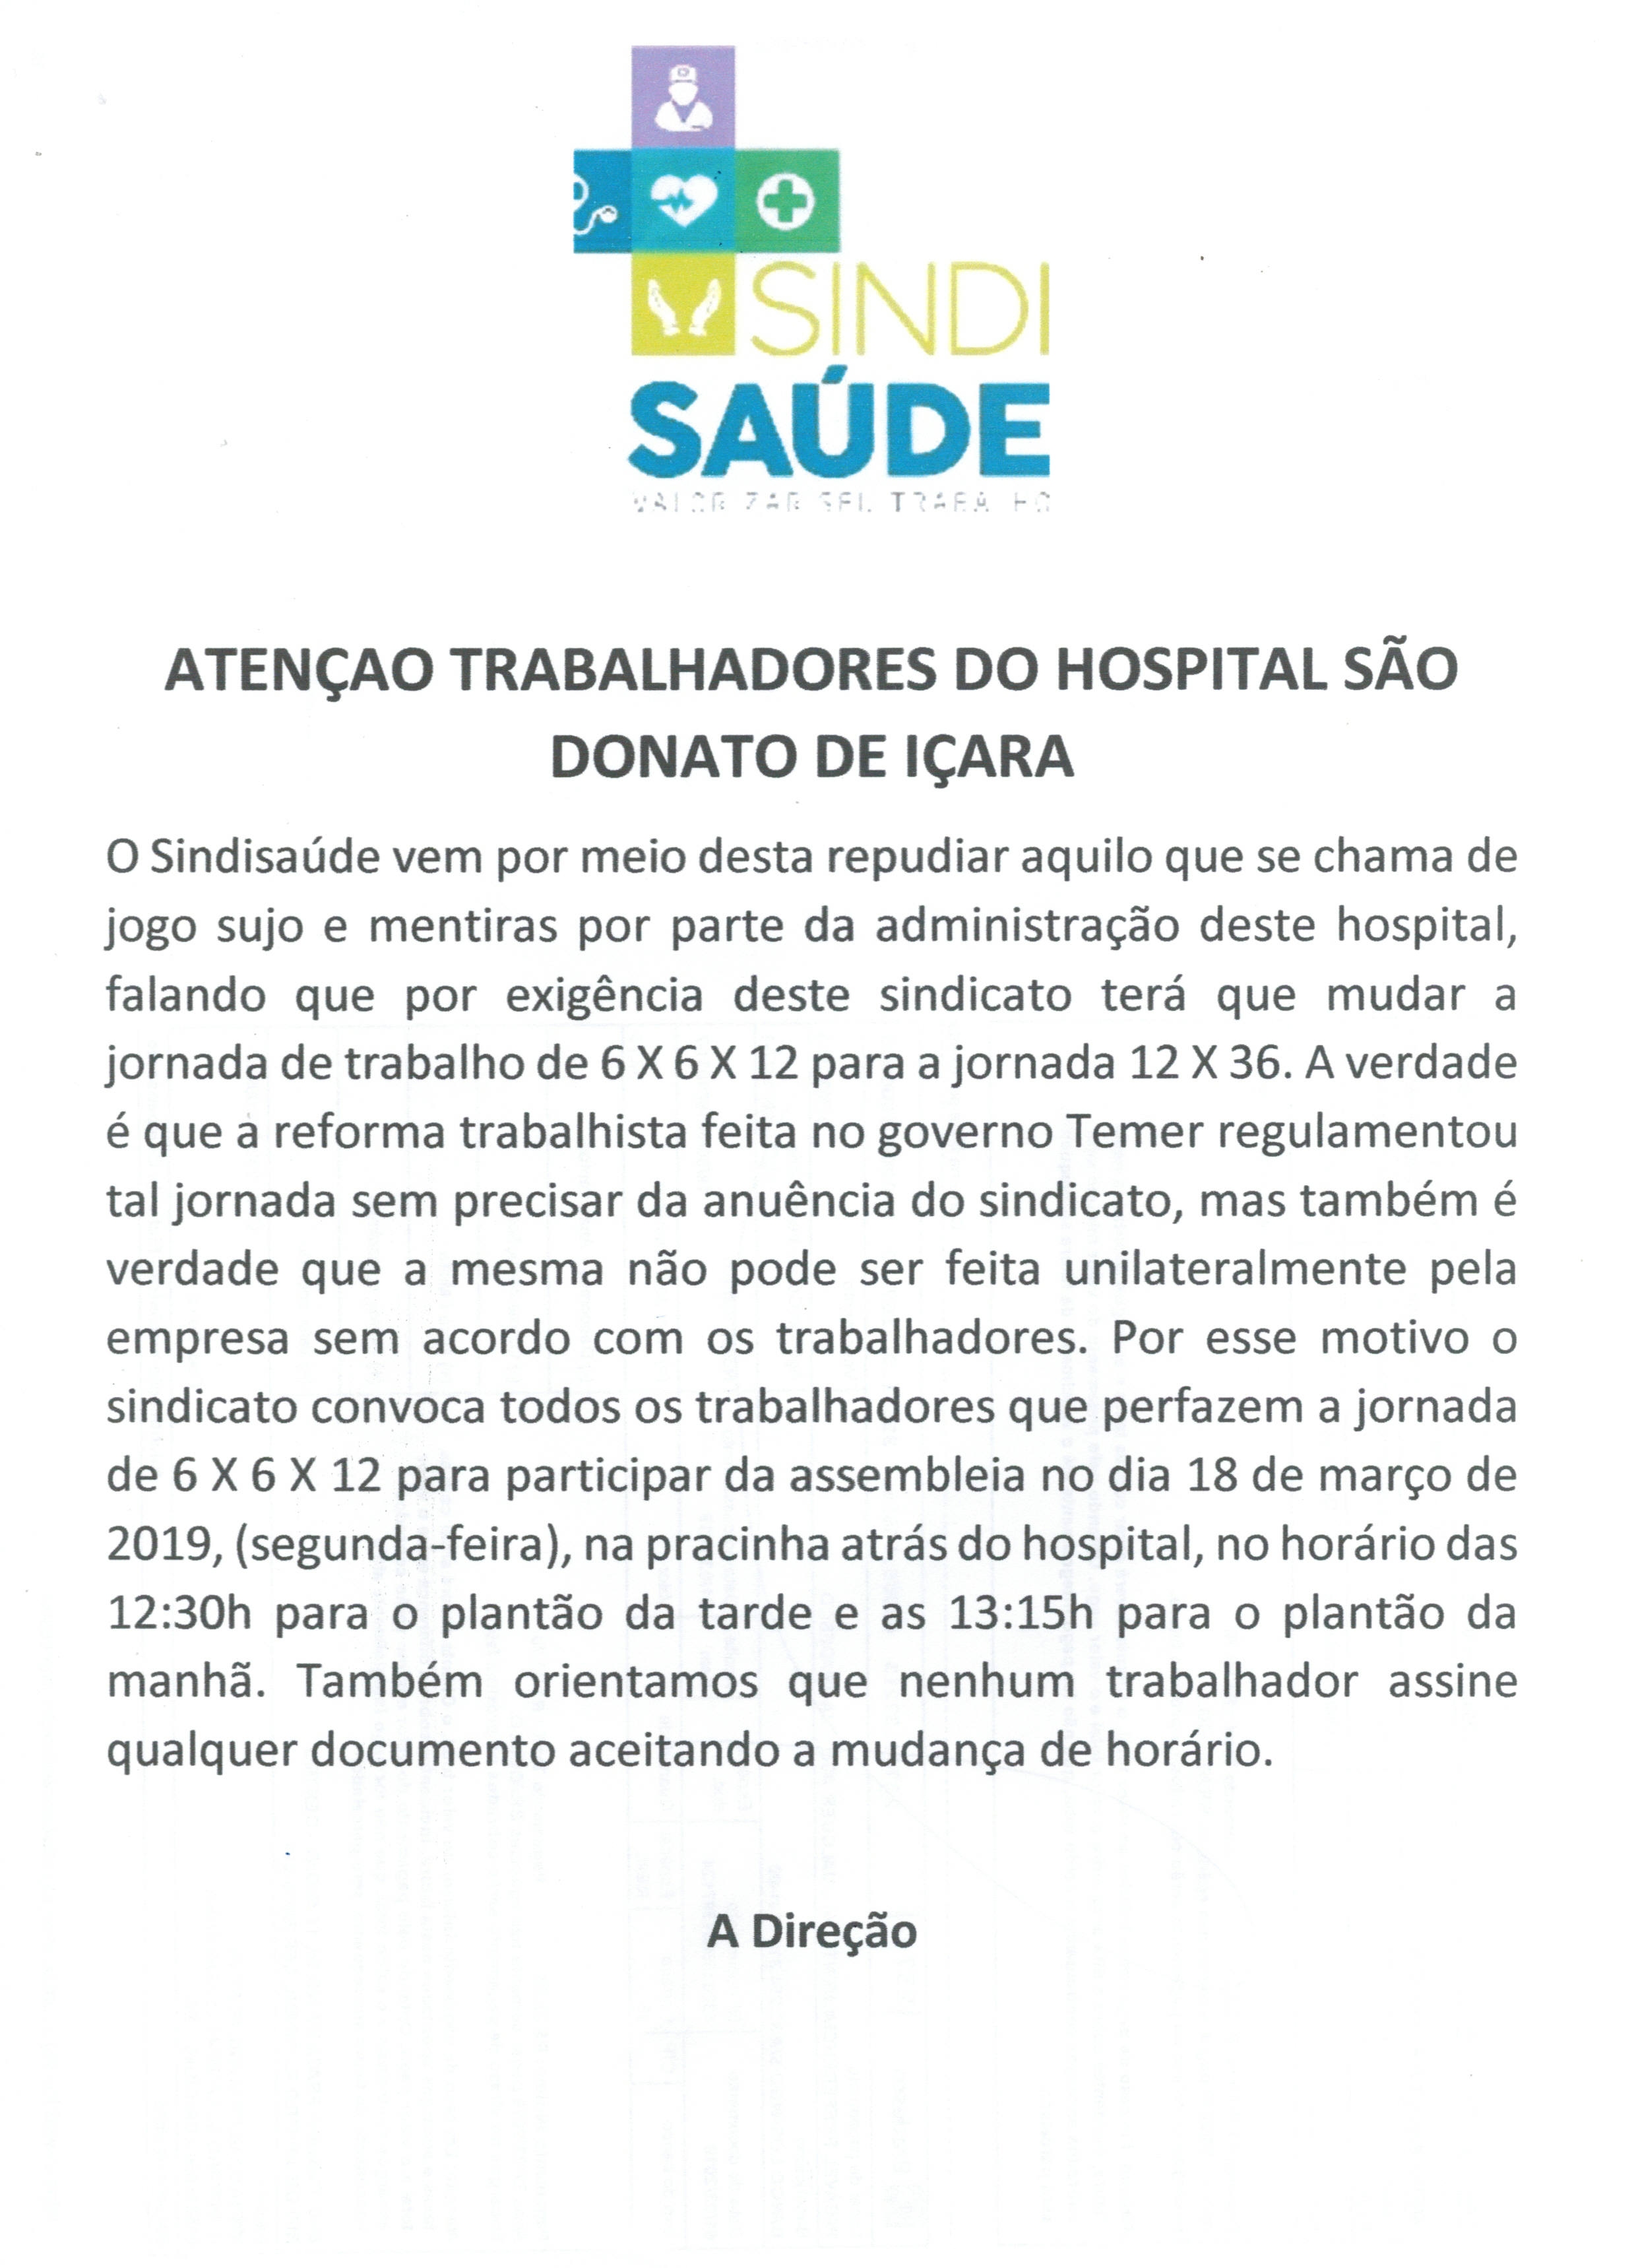 ASSEMBLEIA TRABALHADORES HOSPITAL SÃO DONATO DE IÇARA